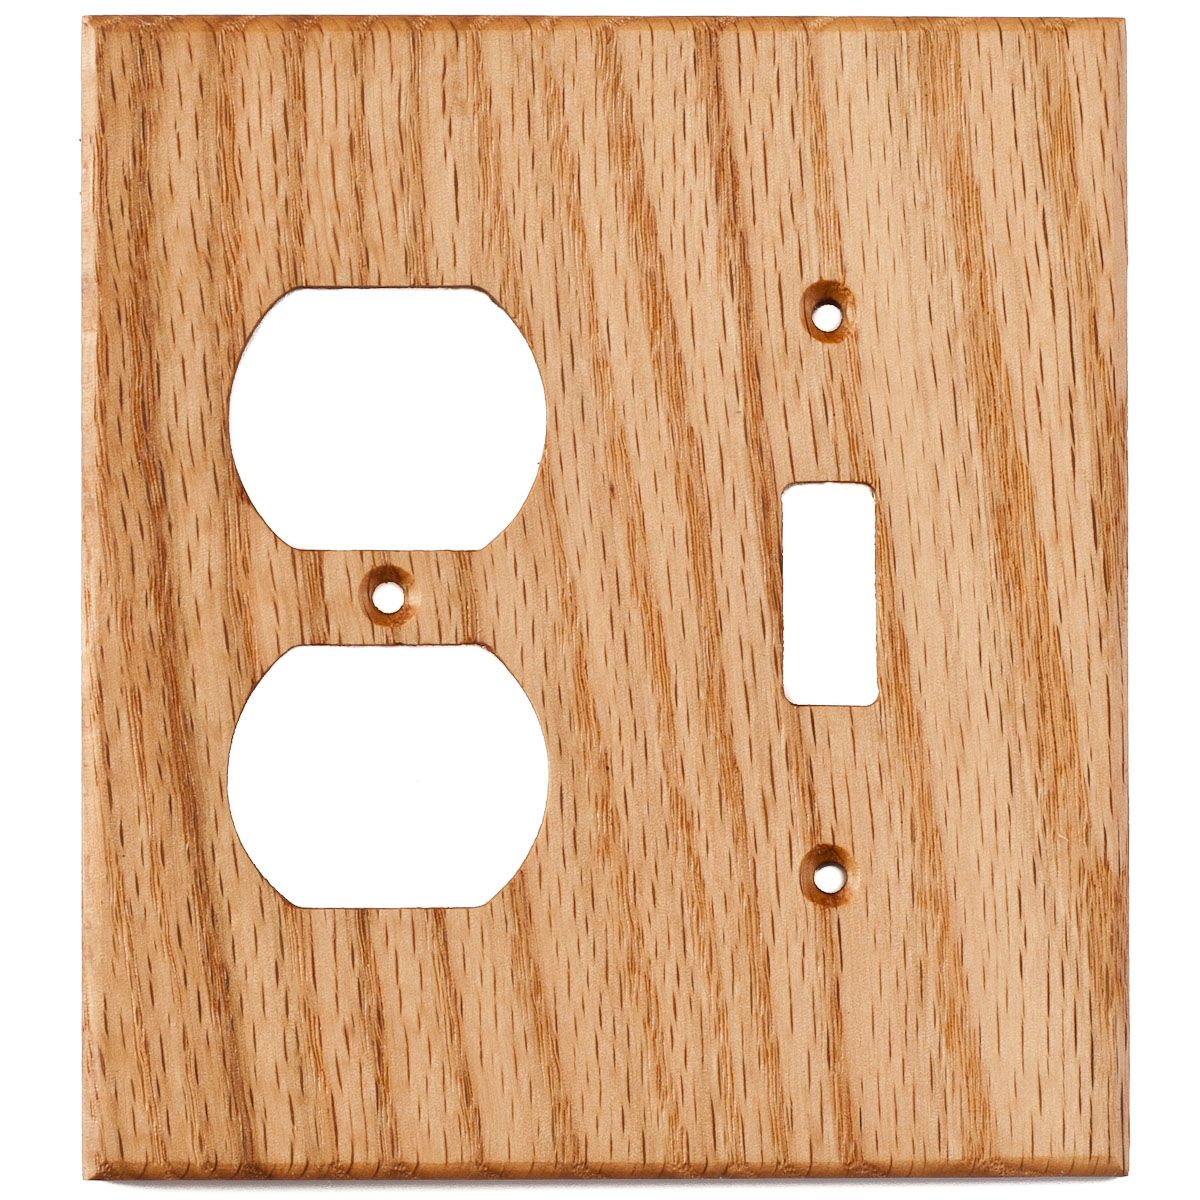 https://www.virgintimberlumber.com/wp-content/uploads/2022/06/red-oak-wood-wall-plate-2gang-combo-light-switch-duplex-outlet-cover.jpg